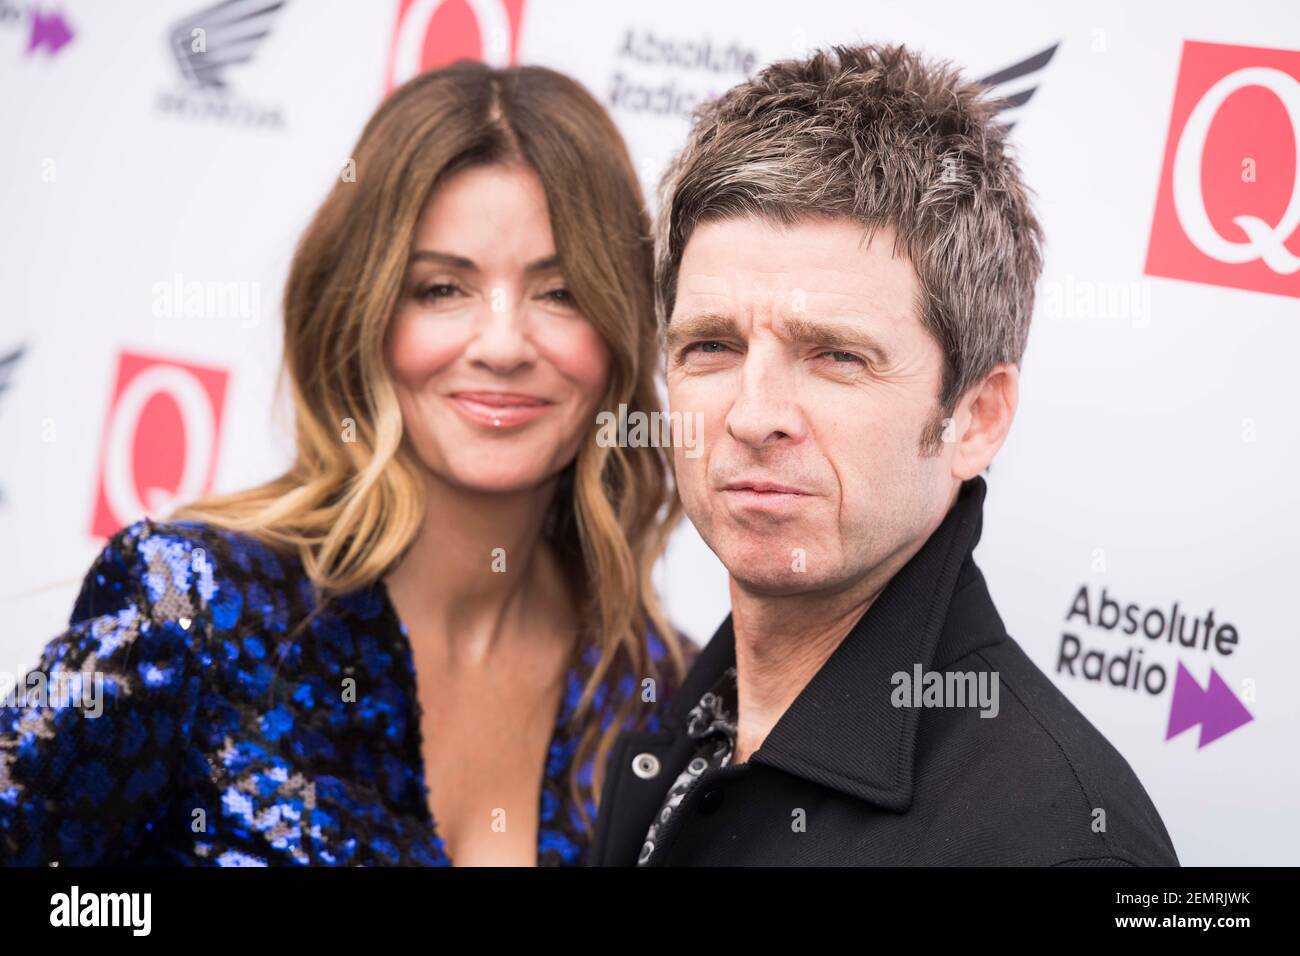 Sarah McDonald und Noel Gallagher kommen zu den Q Awards 2018 im Roundhouse, Camden, London. Bilddatum: Mittwoch, 17th. Oktober 2018. Bildnachweis sollte lauten: David Jensen Stockfoto